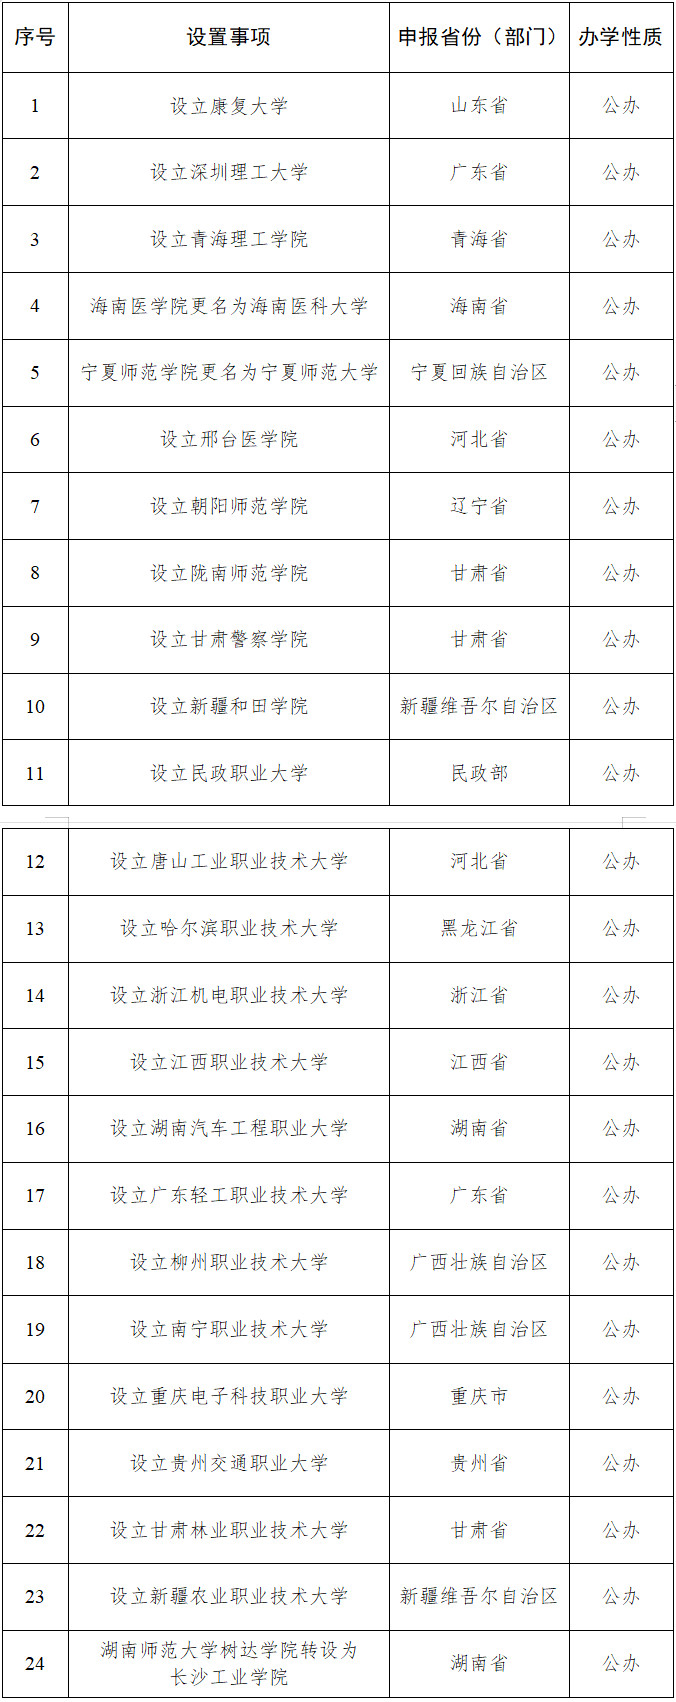 拟同意设置本科高等学校名单�。深圳理工大学	、轻工来源：教育部网站